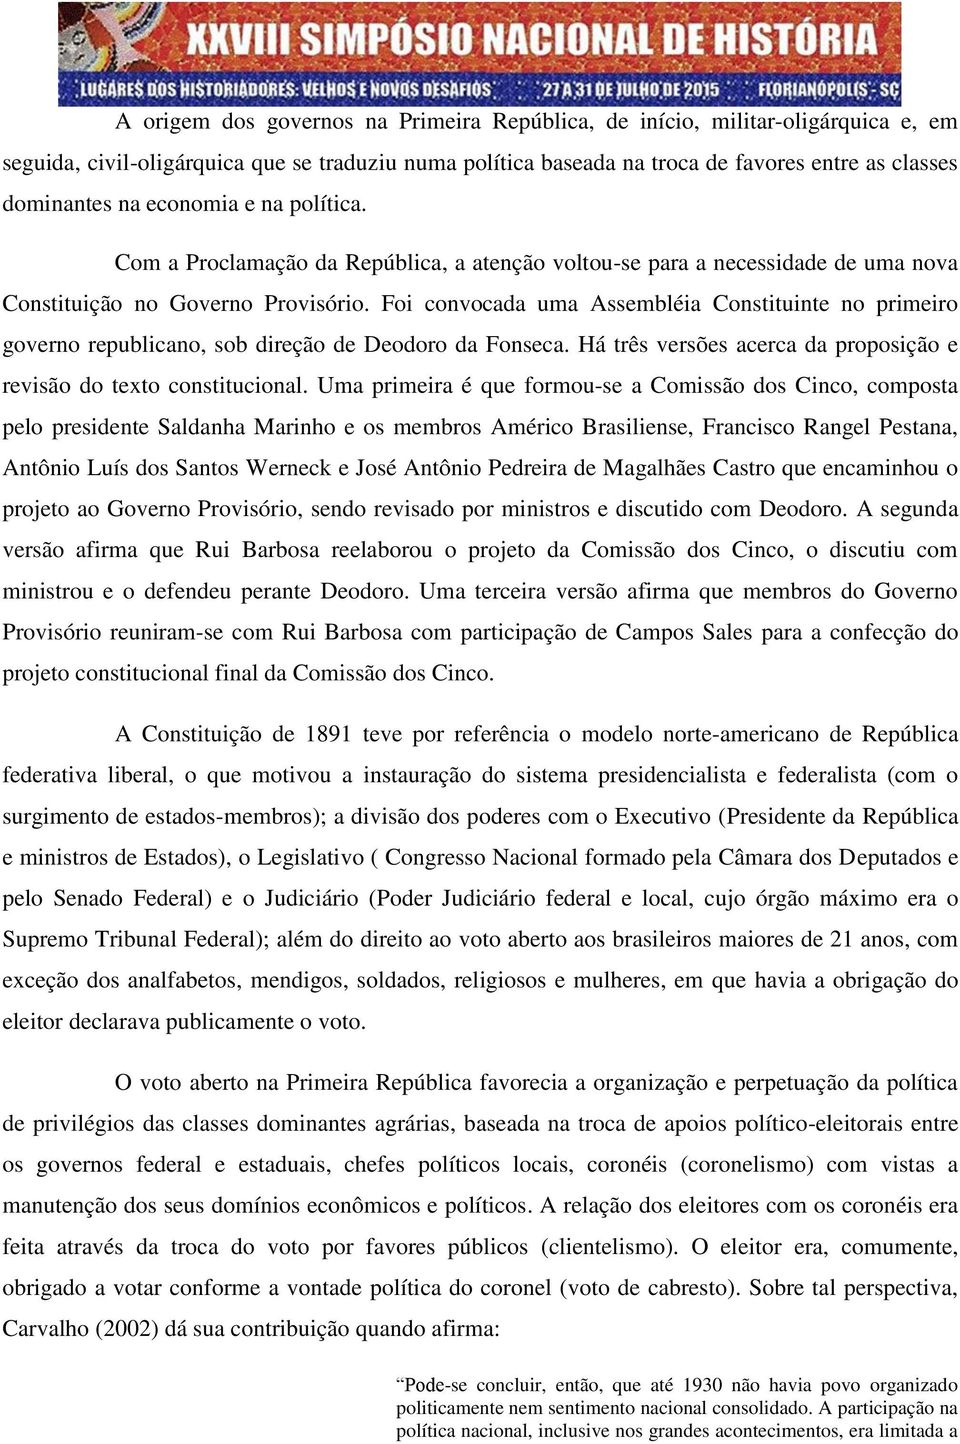 Foi convocada uma Assembléia Constituinte no primeiro governo republicano, sob direção de Deodoro da Fonseca. Há três versões acerca da proposição e revisão do texto constitucional.